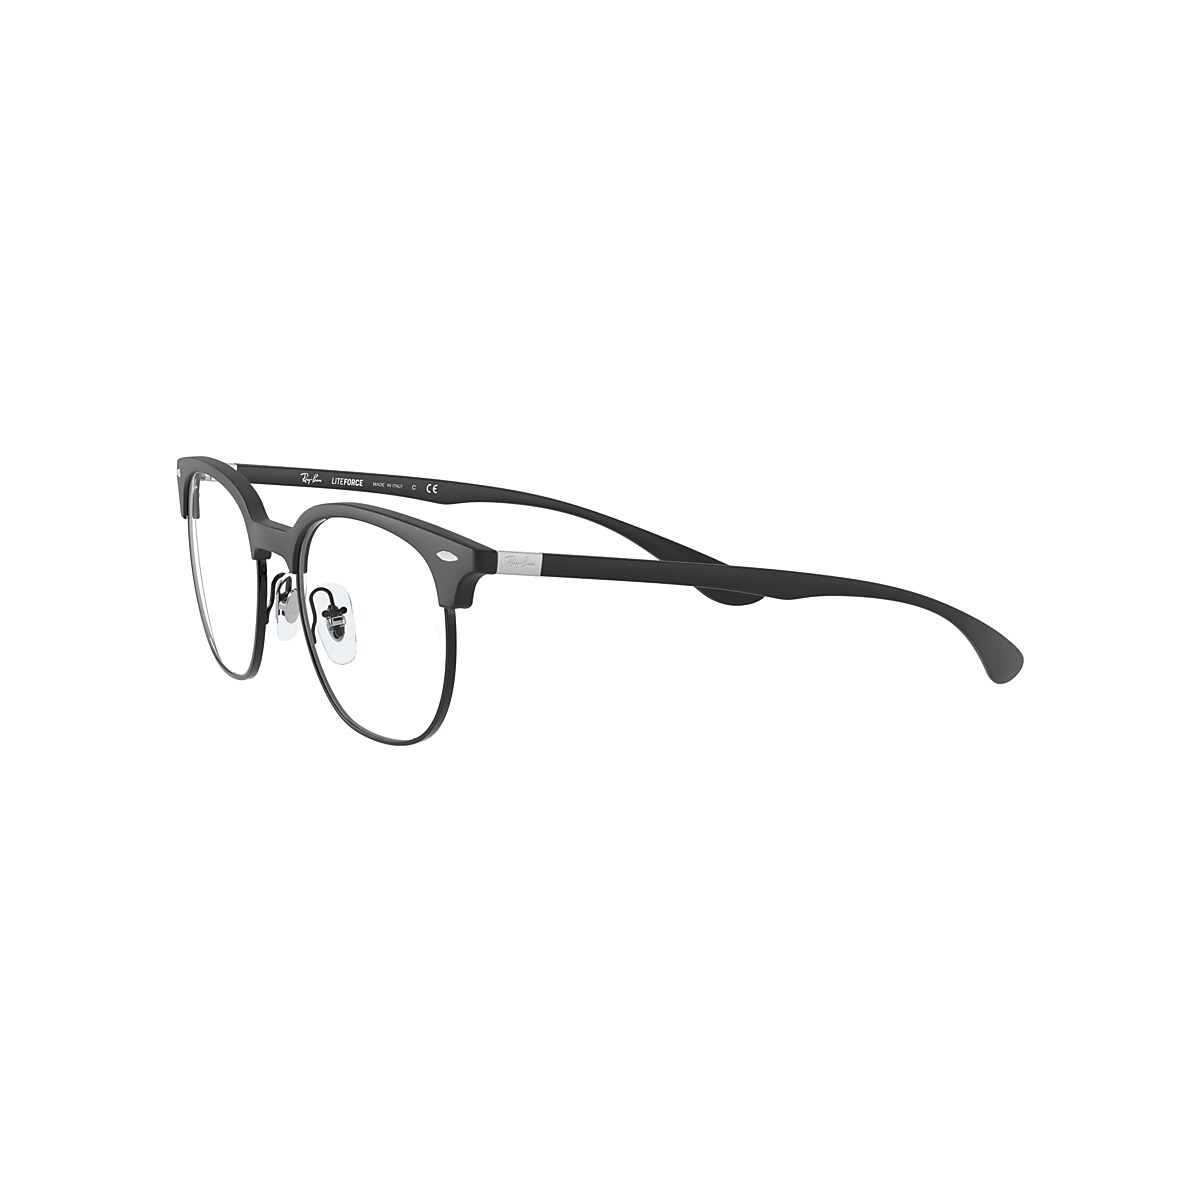 RB7186 with Sand RB7186 US Frame - Black Eyeglasses Ray-Ban® | OPTICS